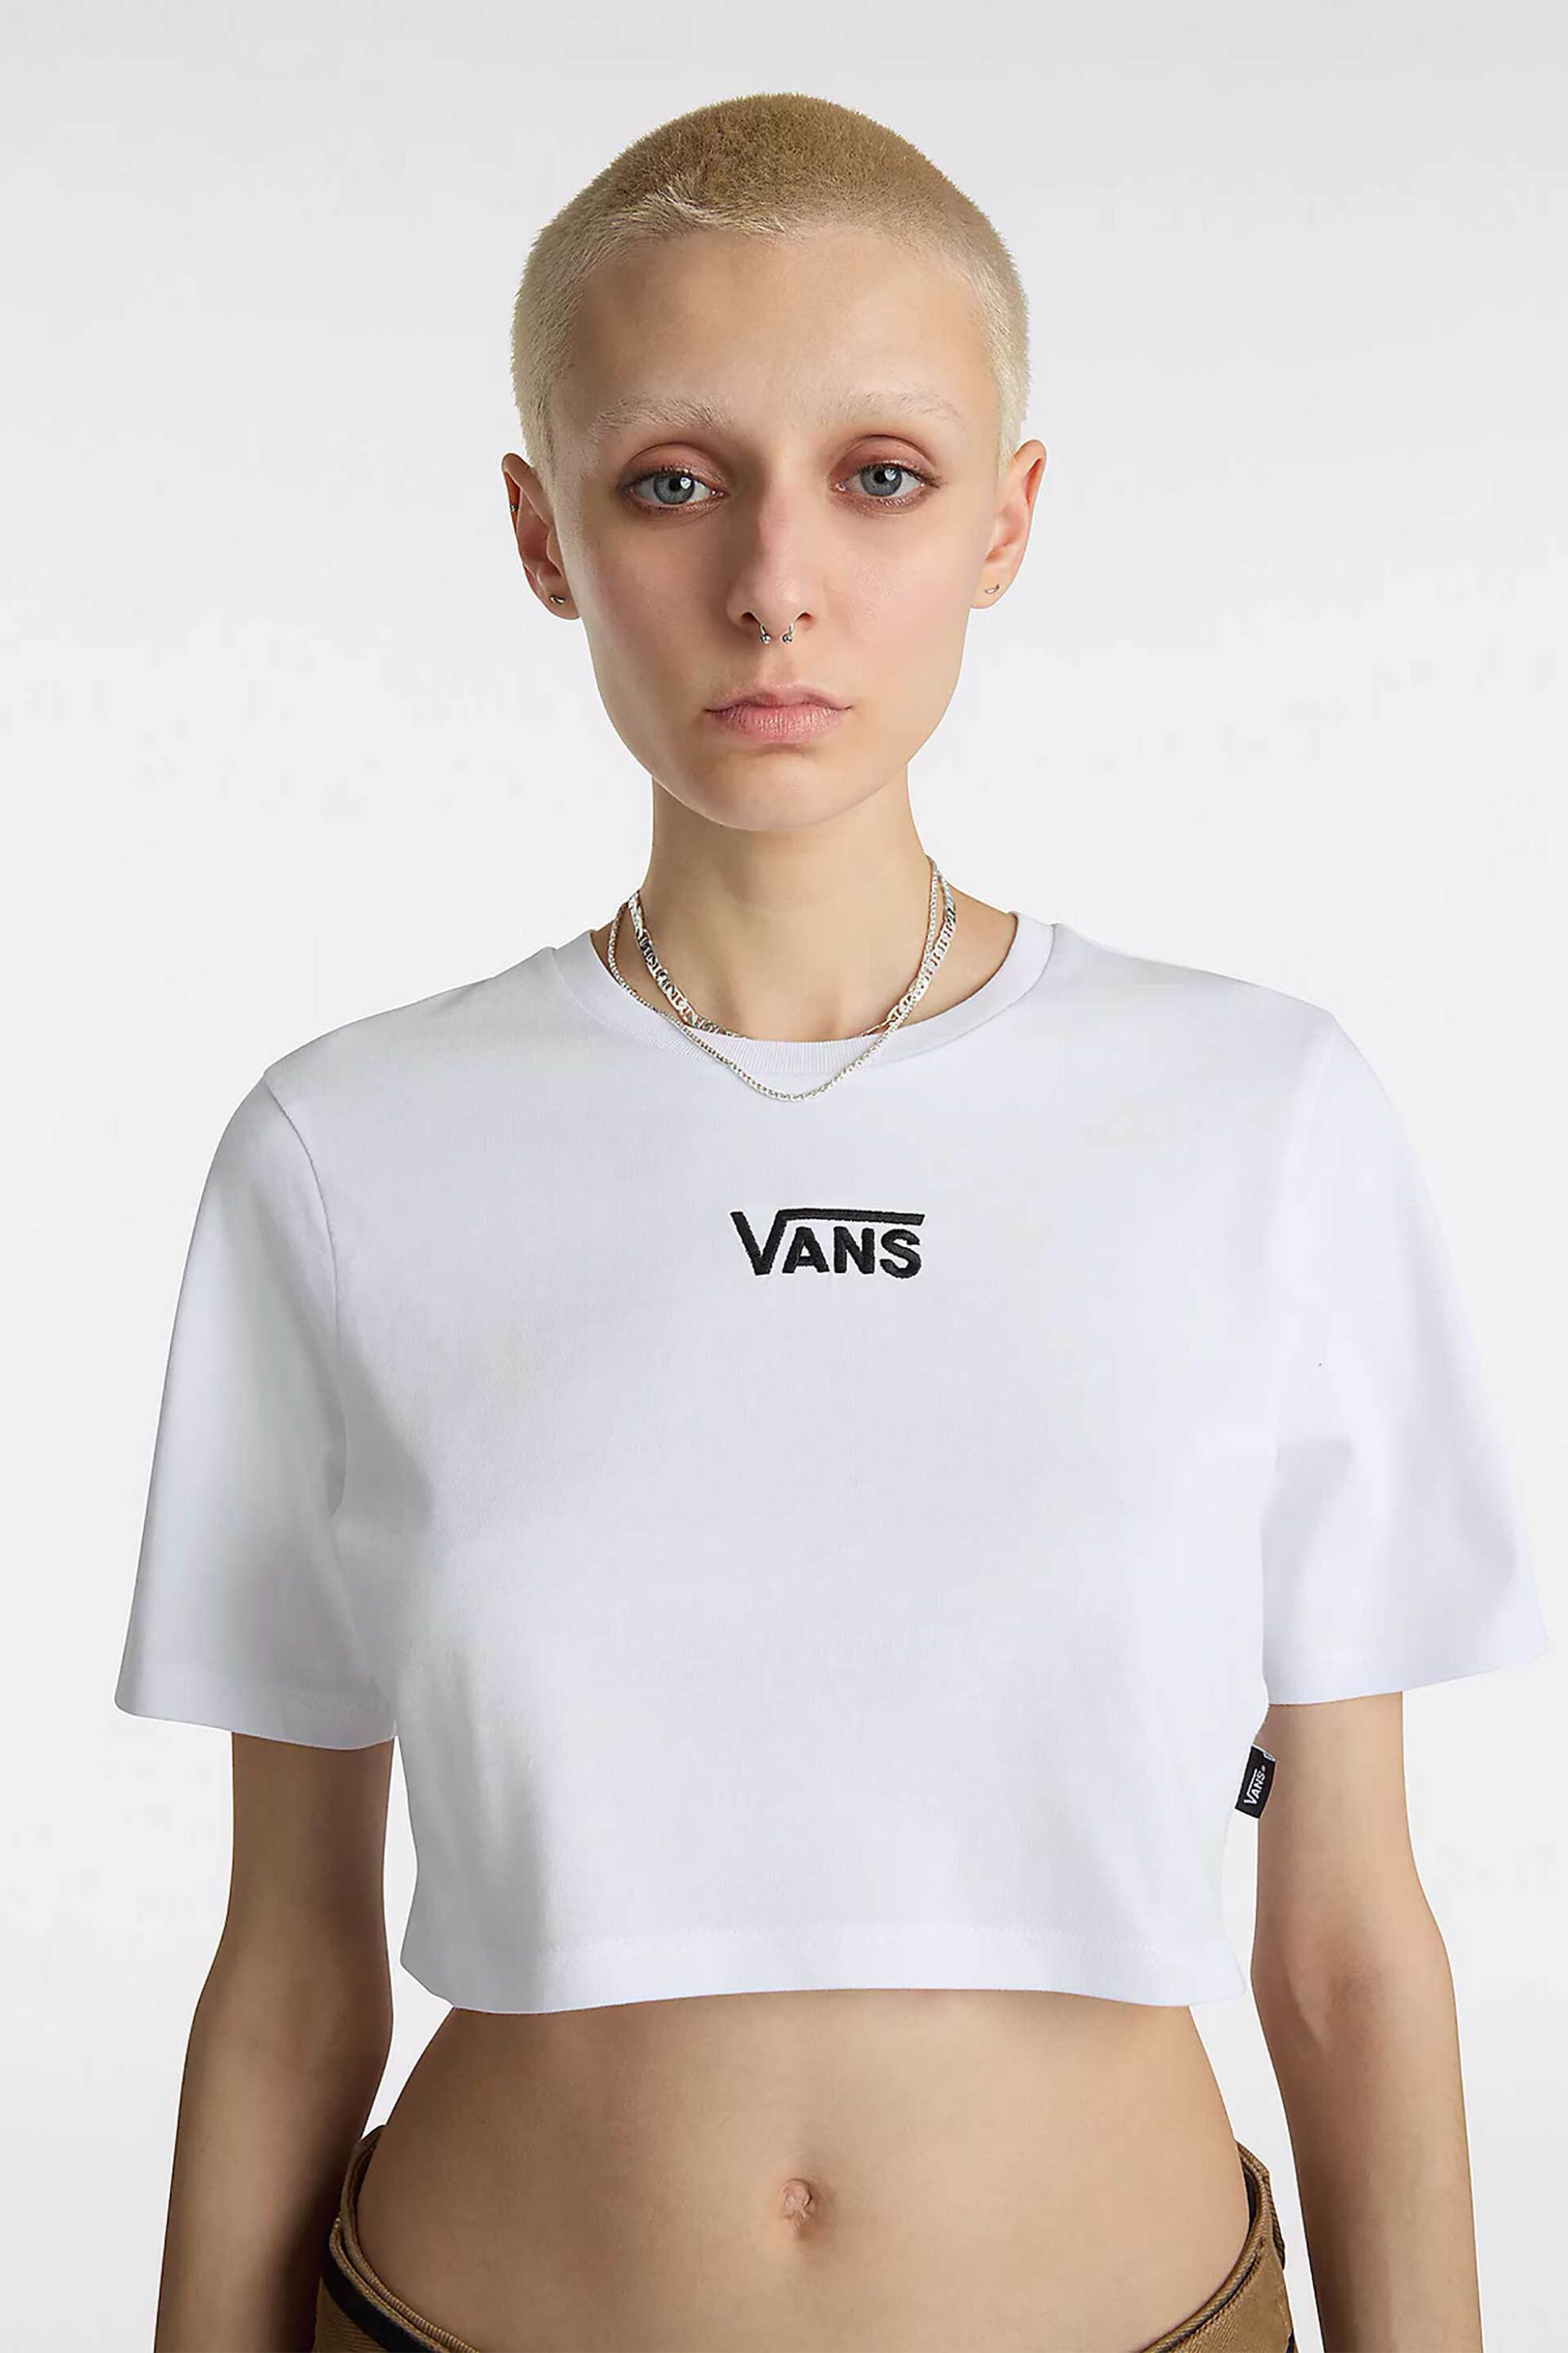 Γυναικεία Ρούχα & Αξεσουάρ > Γυναικεία Ρούχα > Γυναικεία Τοπ > Γυναικεία T-Shirts Vans γυναικείο cropped T-shirt βαμβακερό μονόχρωμο με κεντημένο λογότυπο "Flying V Crew Crop II" - VN000GFFWHT1 Λευκό